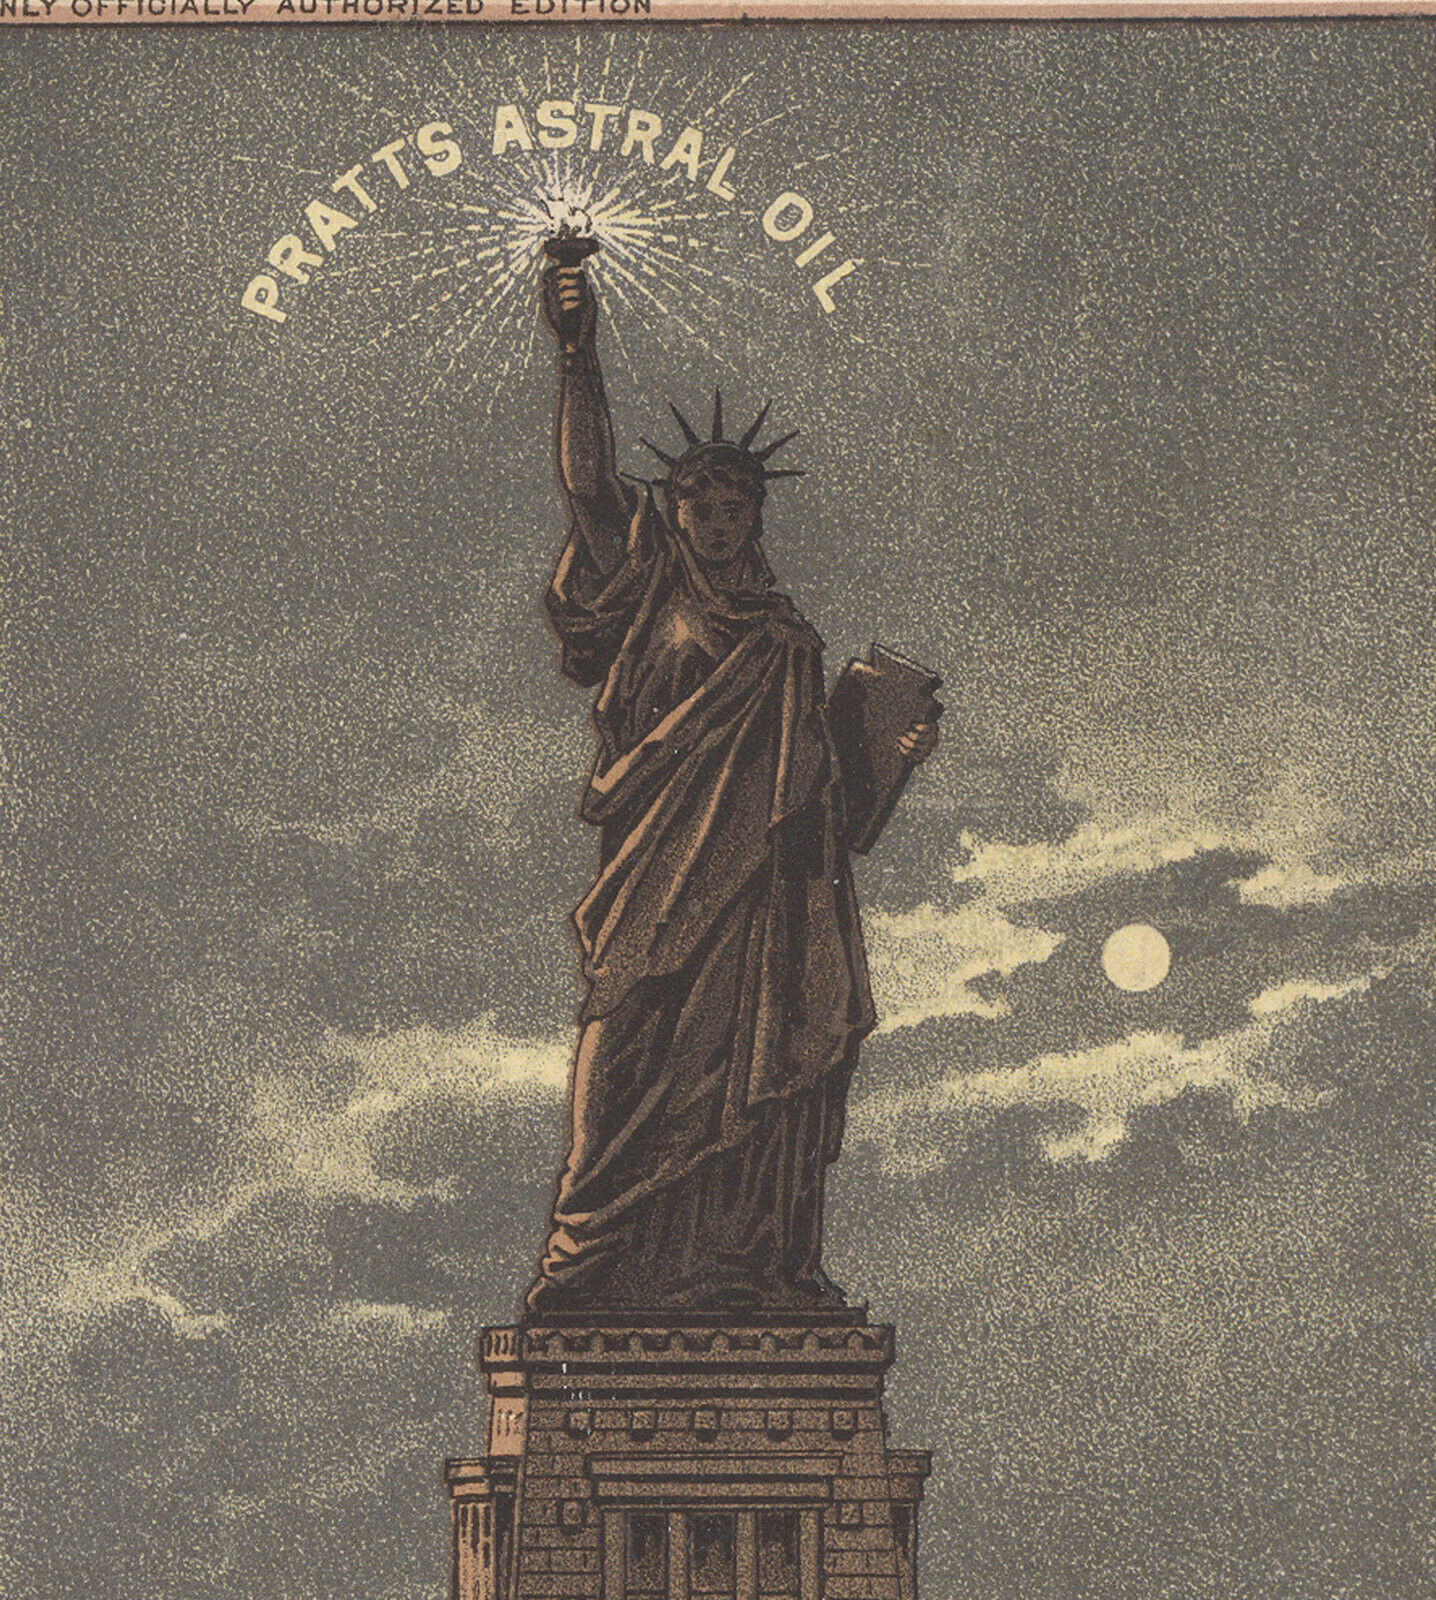 1883 PRATT ASTRAL OIL LG TRADE CARD, STATUE OF LIBERITY, PRATT MFG CO, NY   C575